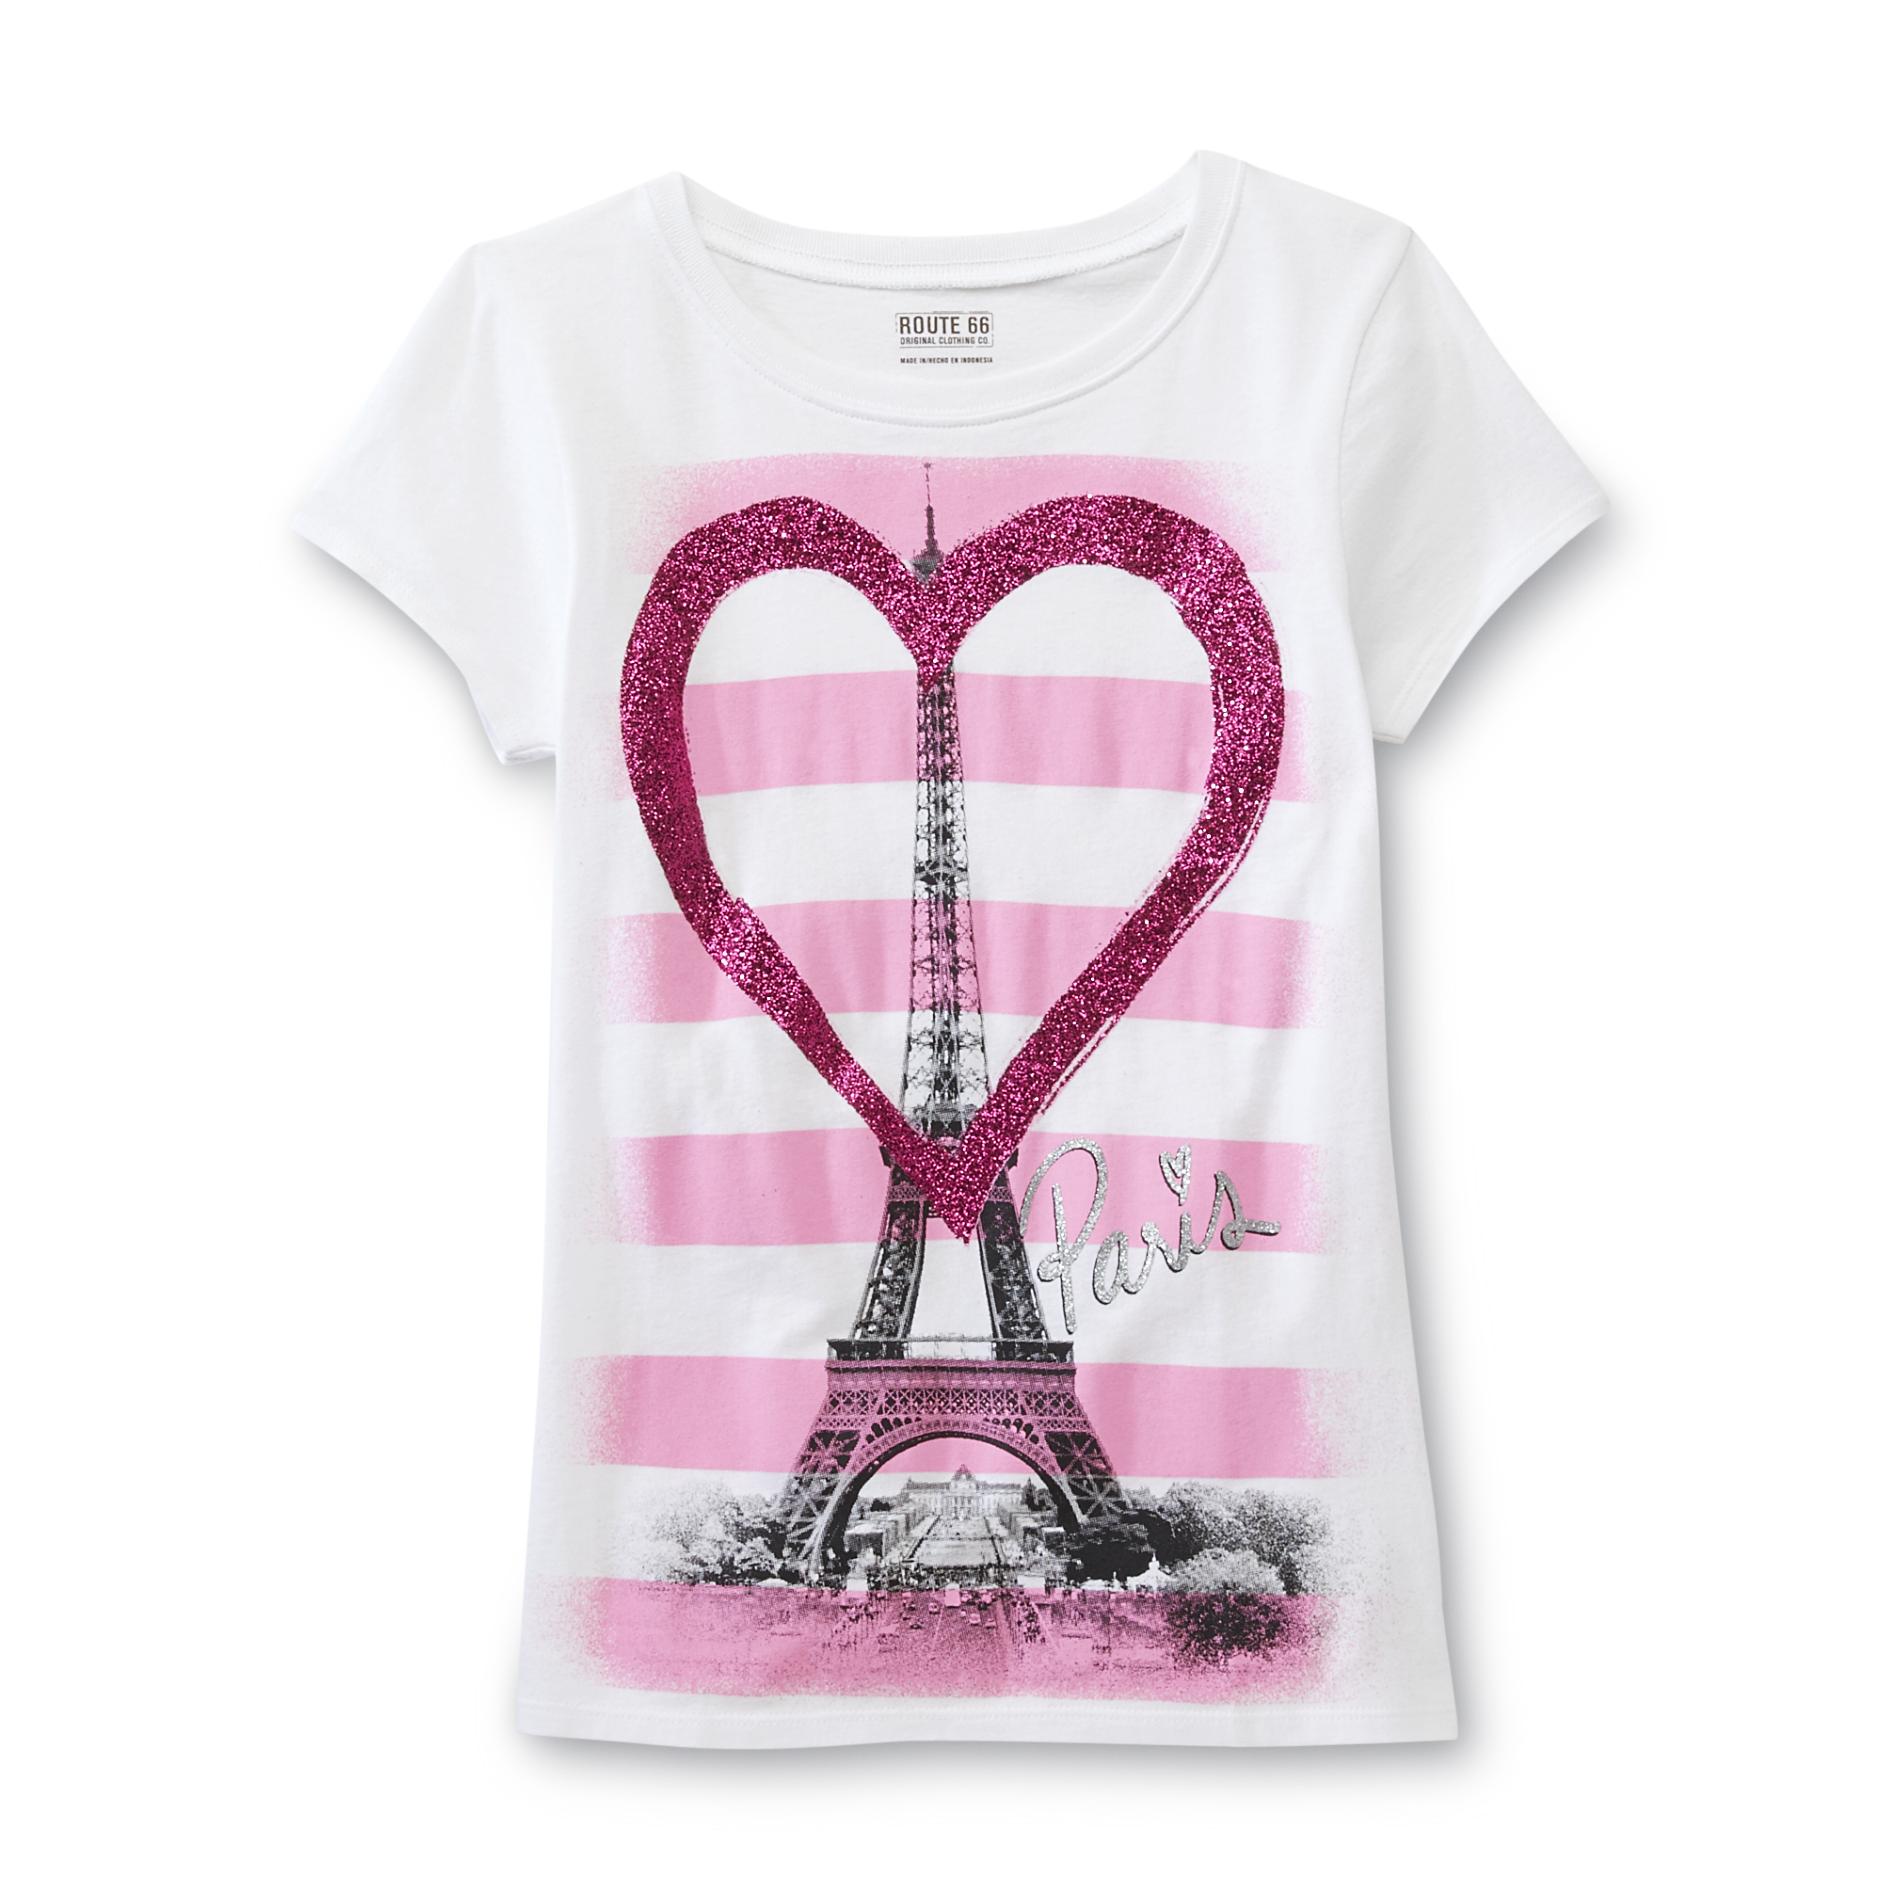 Route 66 Girl's Glitter Heart T-Shirt - Paris